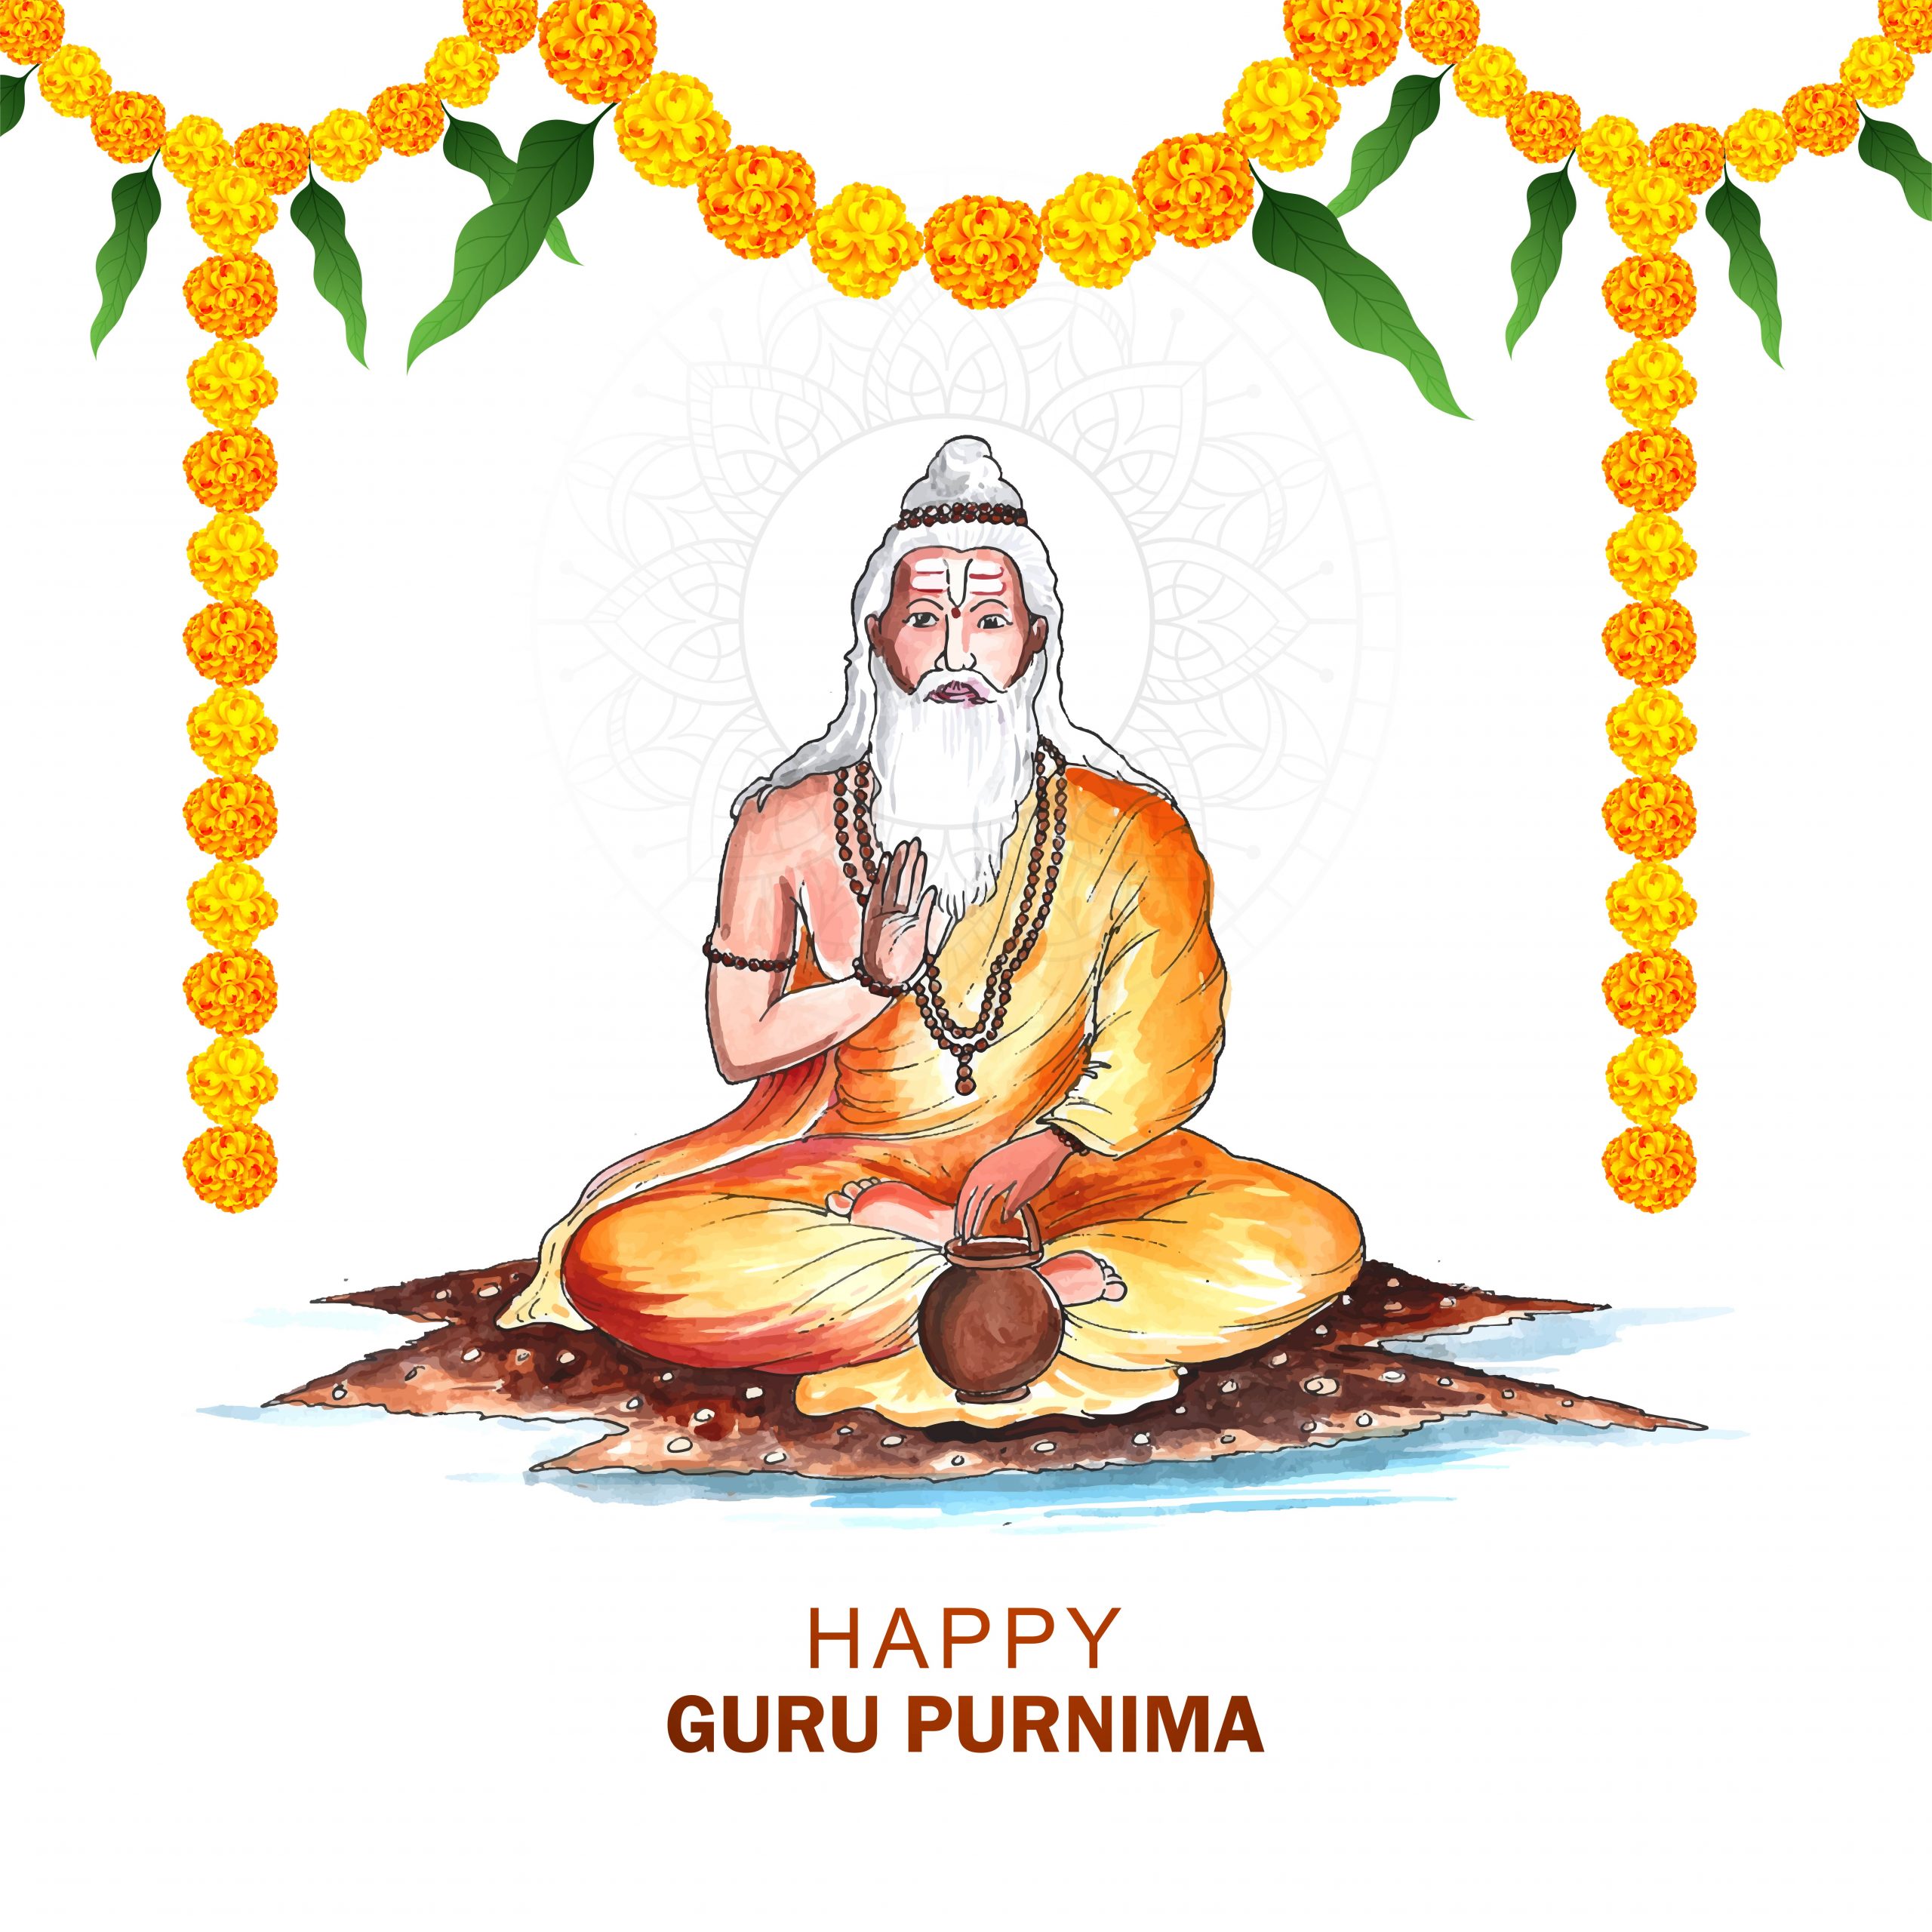 Guru Purnima Quotes In Hindi: गुरु पूर्णिमा शुभकामना संदेश हिंदी में